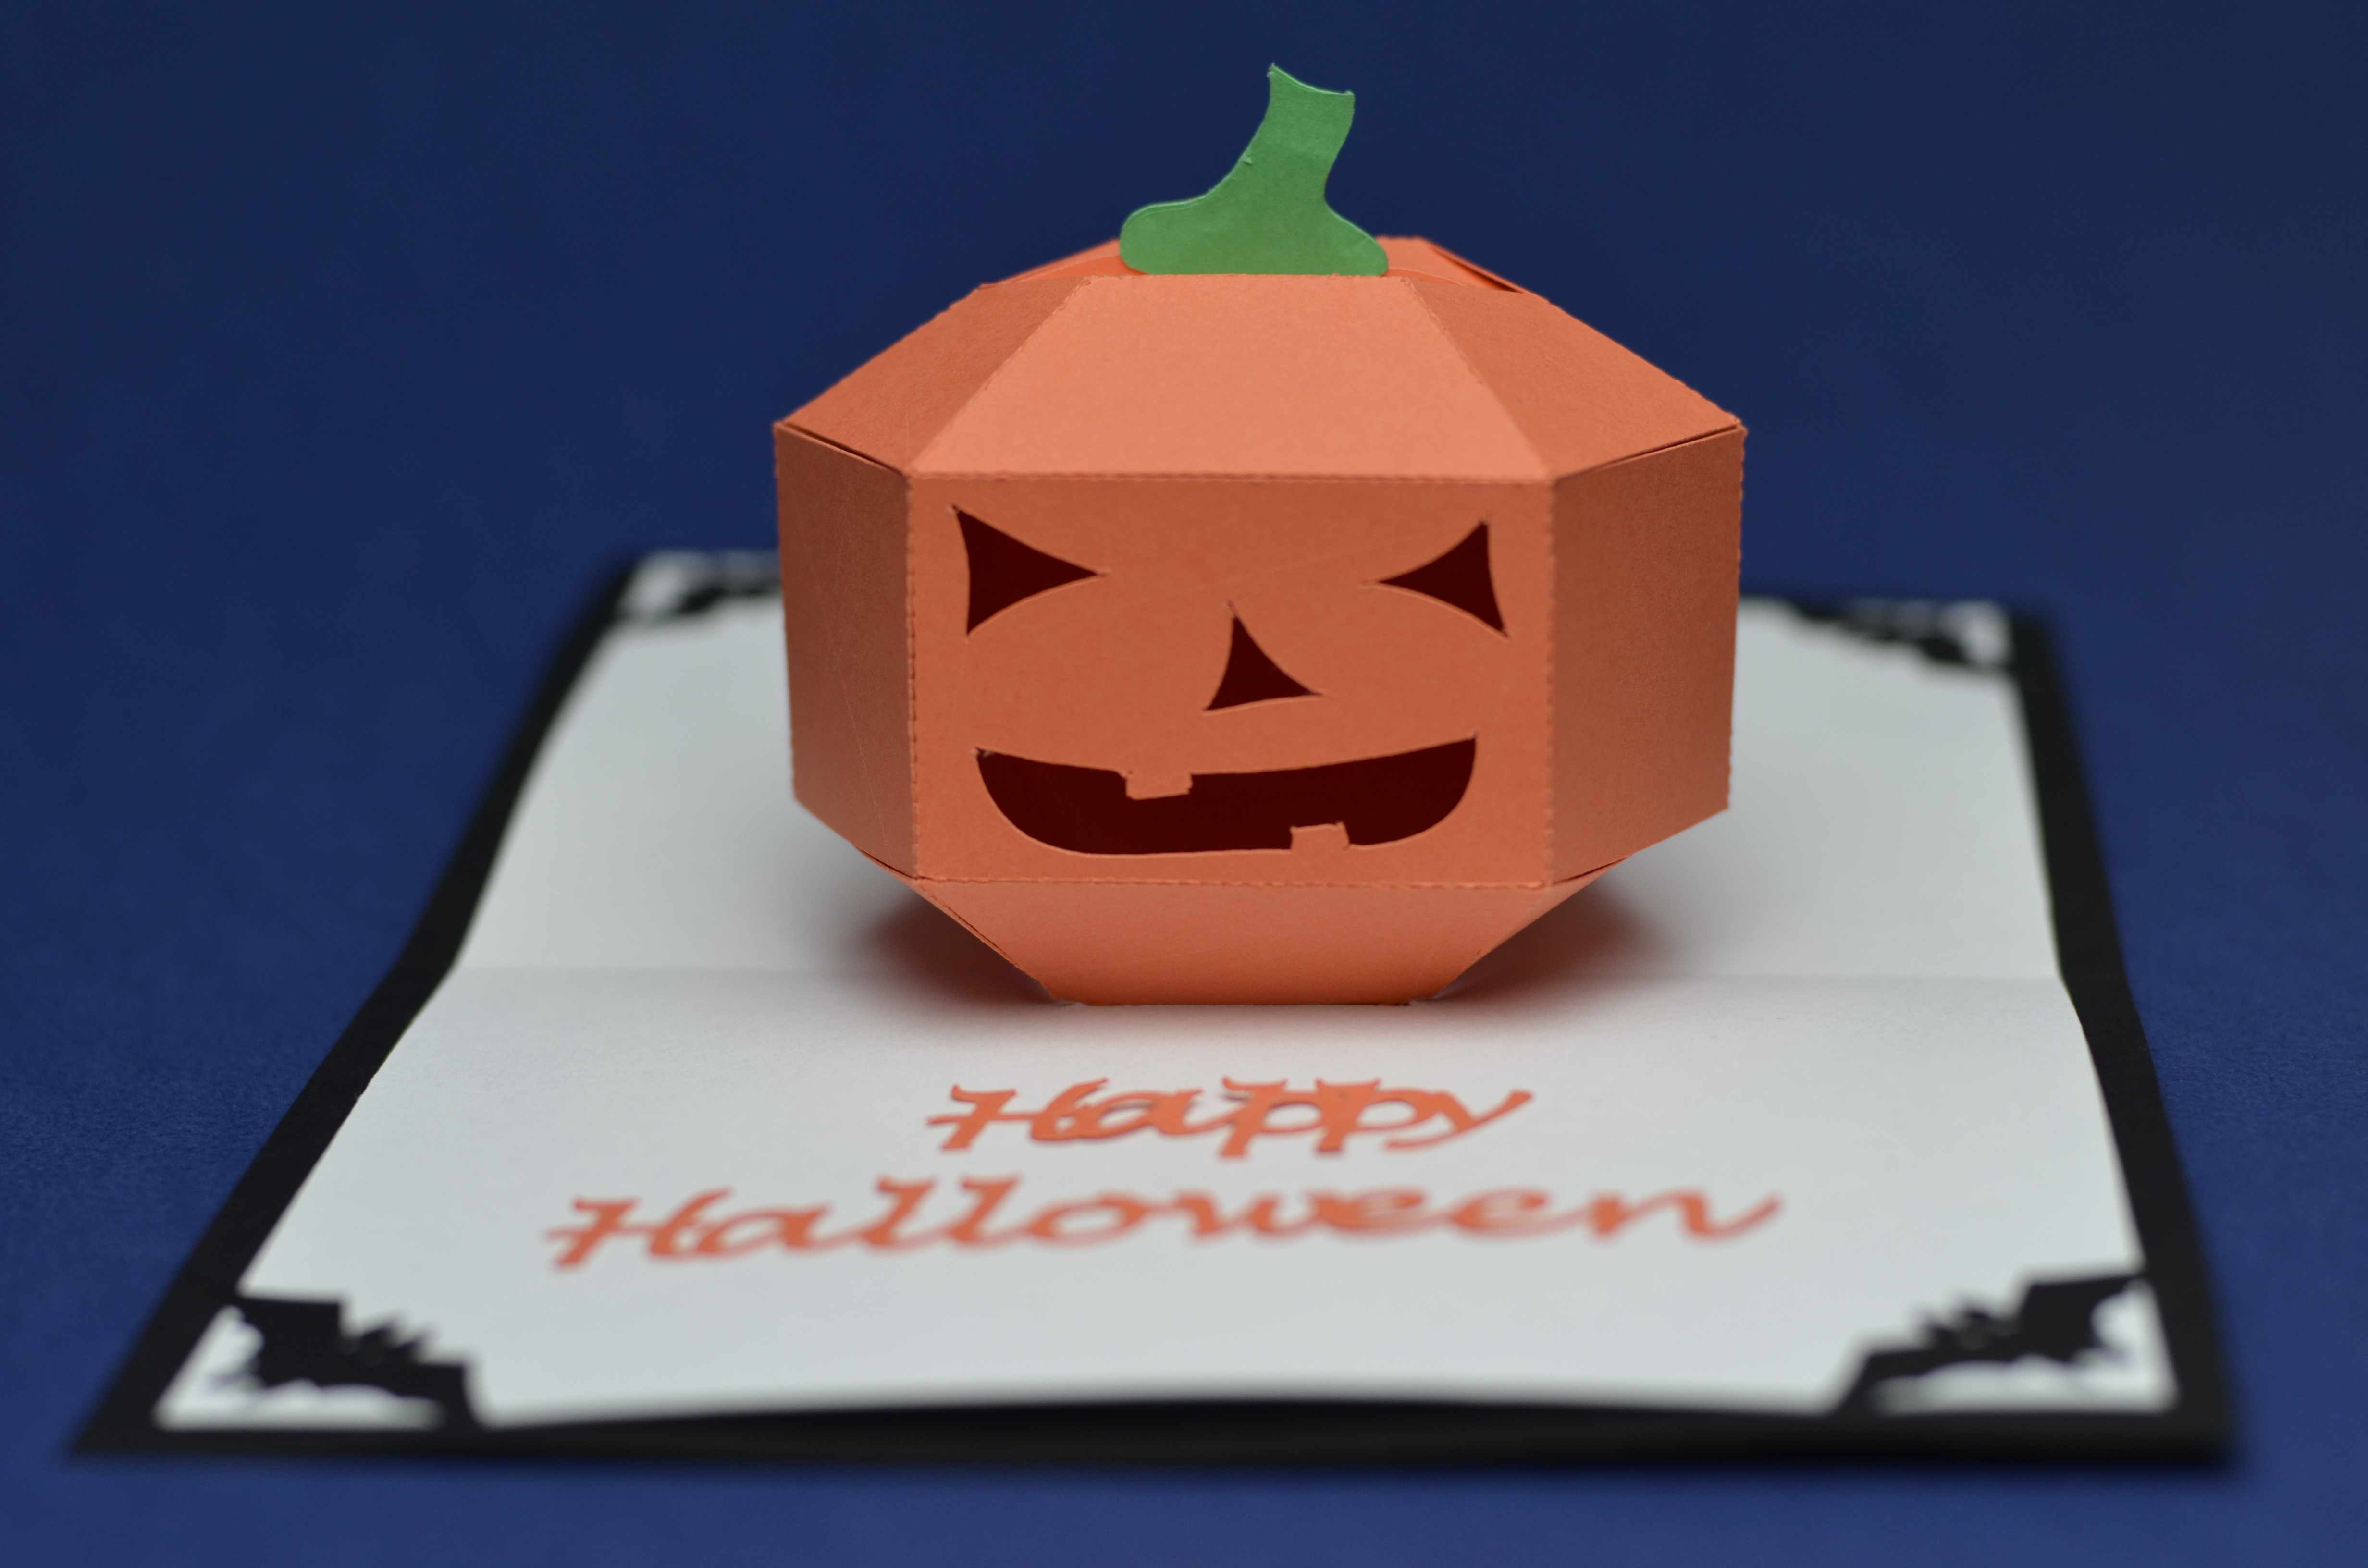 Download 3D Pumpkin Pop Up Card Template - Creative Pop Up Cards